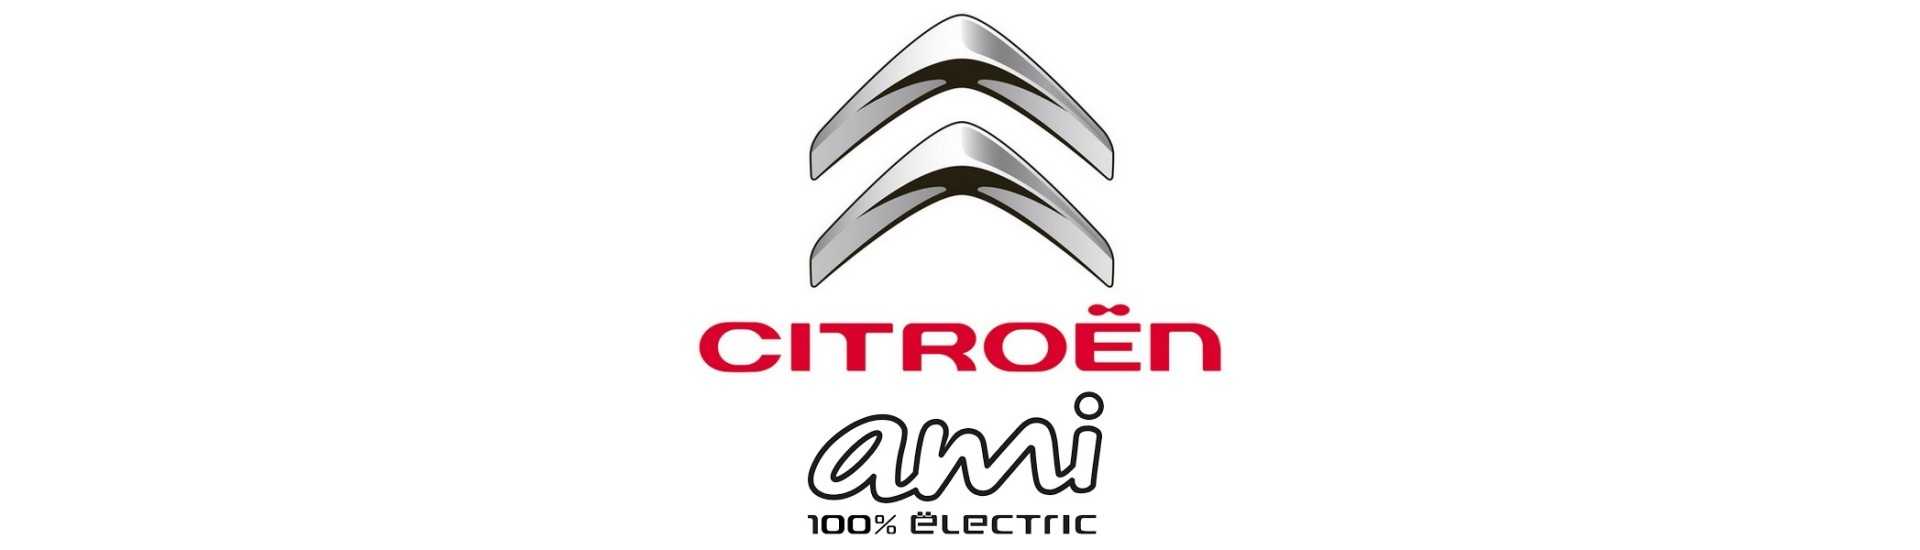 Lunotto posteriore al miglior prezzo per un'auto senza patente Citroën Ami